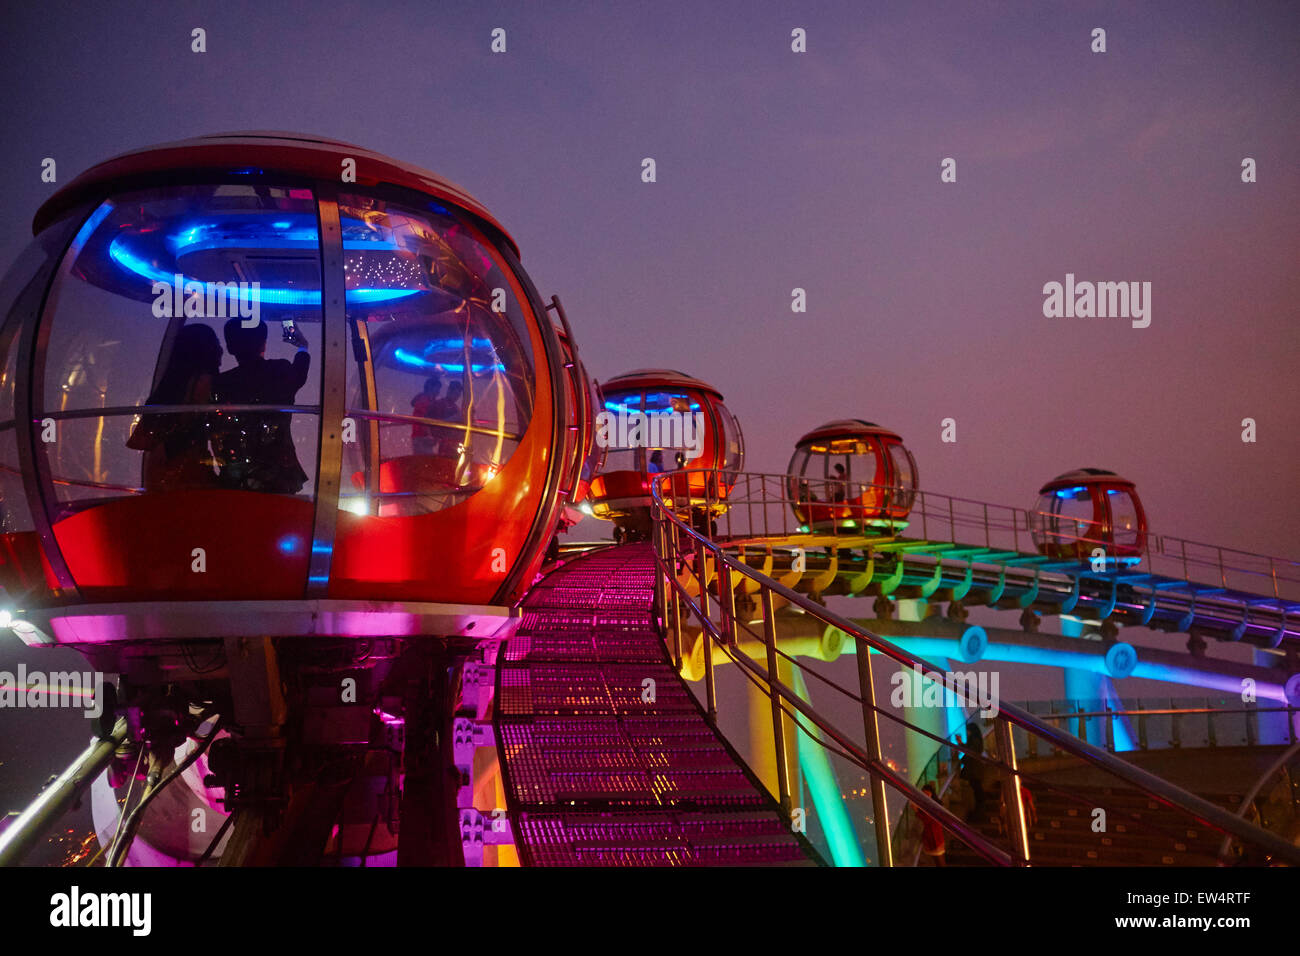 China, Guangdong province, Guangzhou or Canton, Zhujiang new city, TV Tower, Ferris Wheel Stock Photo